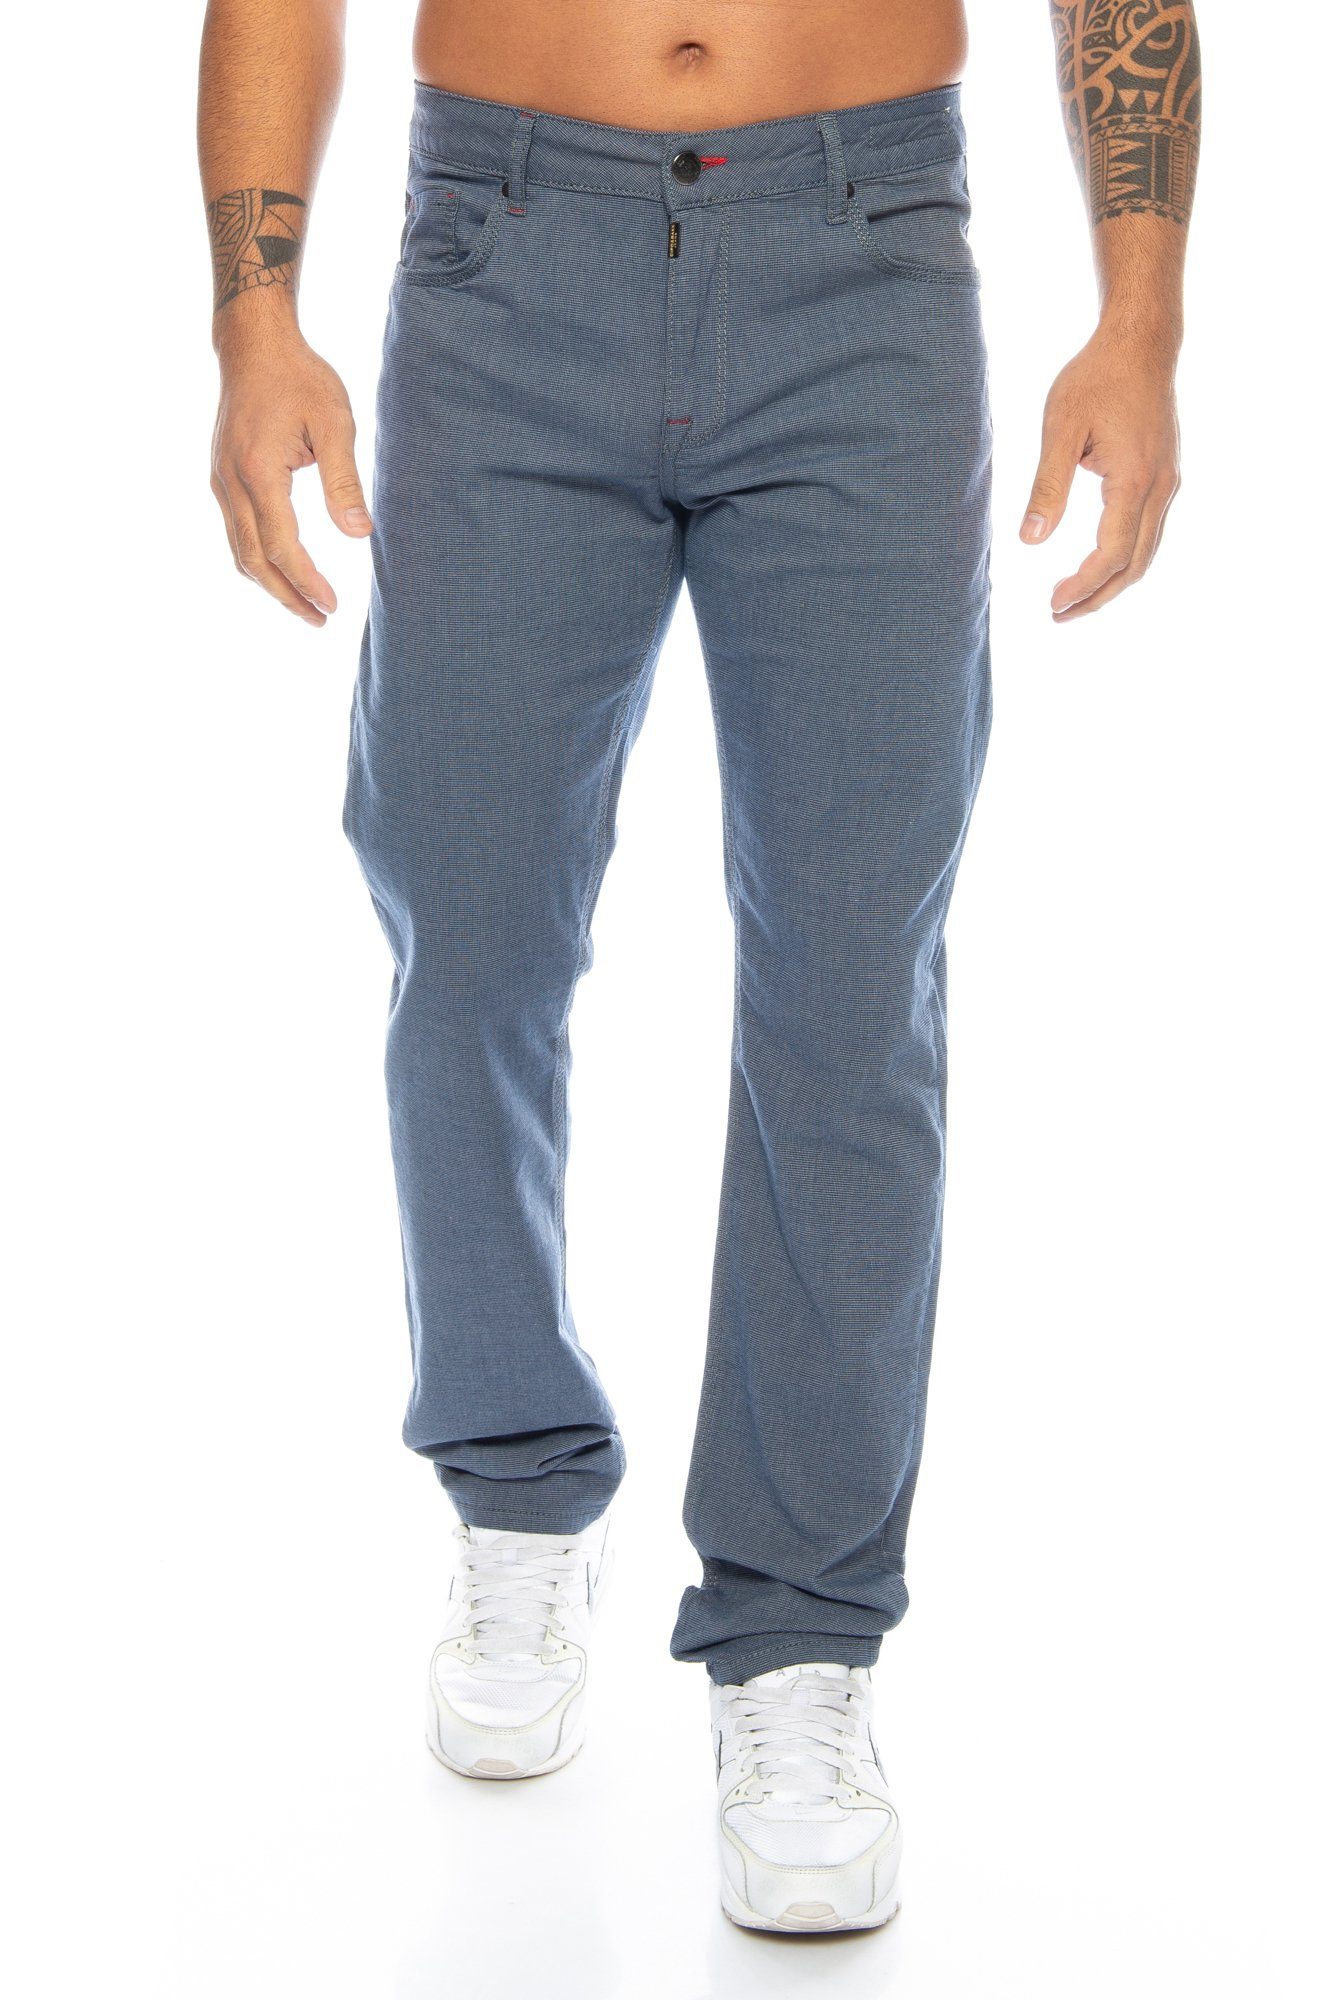 & Blau im Design Slim-fit-Jeans Leichter Cipo Jeans Stoffhose Baxx Herren zeitlosen Tragekmofort